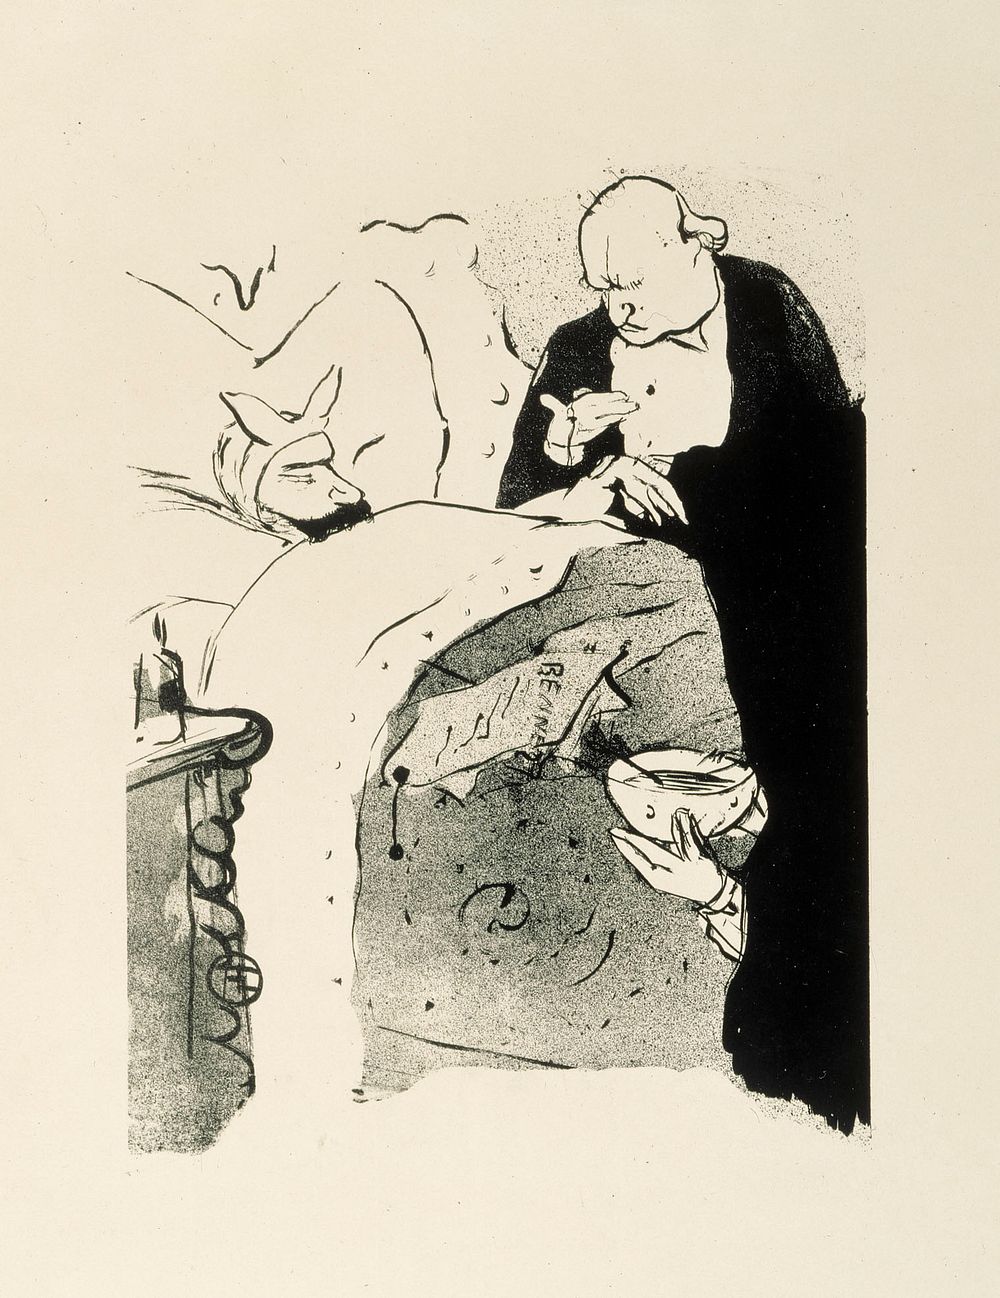 Sick carnot (1893) by Henri de Toulouse-Lautrec